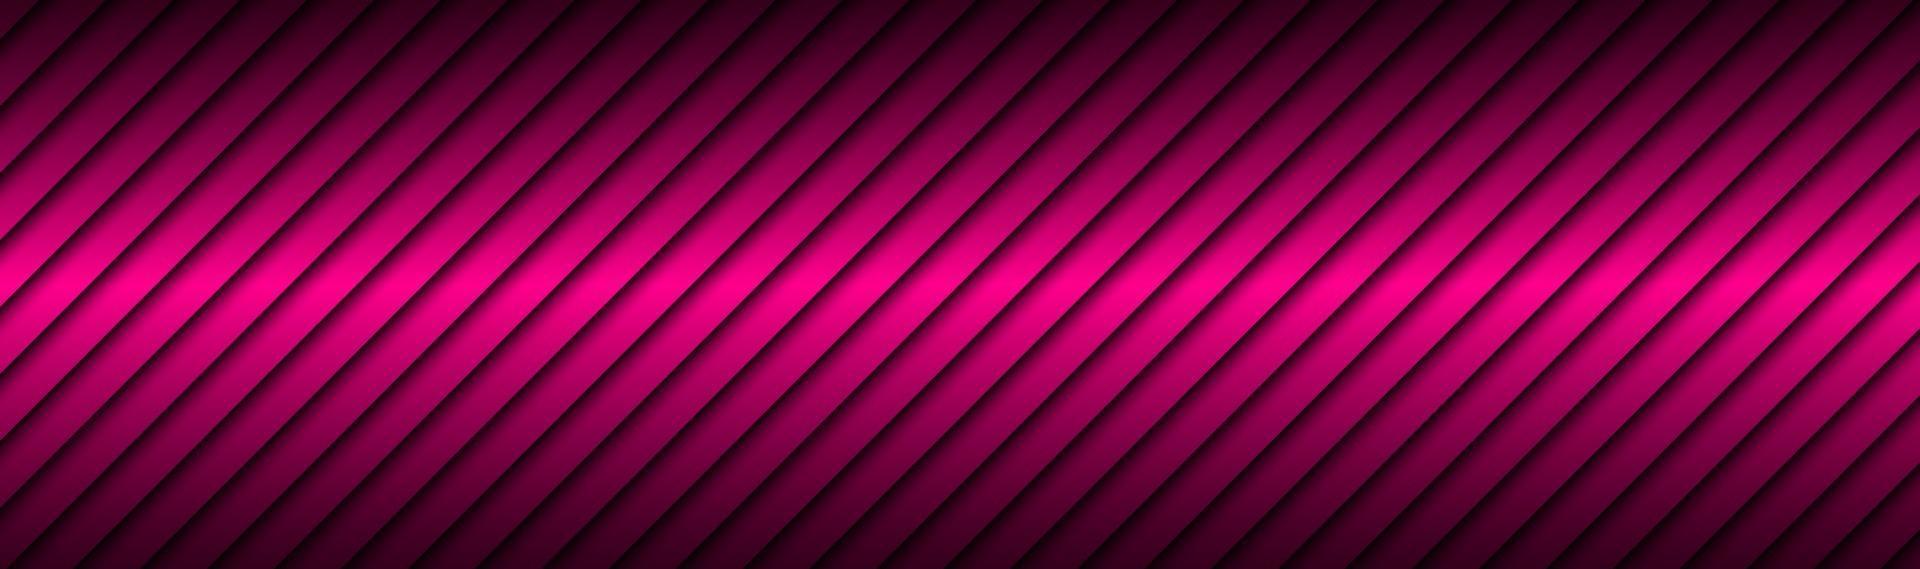 Rosa Linie abstrakte Kopfzeile mit dunklen Farbverläufen einfache Vektormaterial Banner vektor